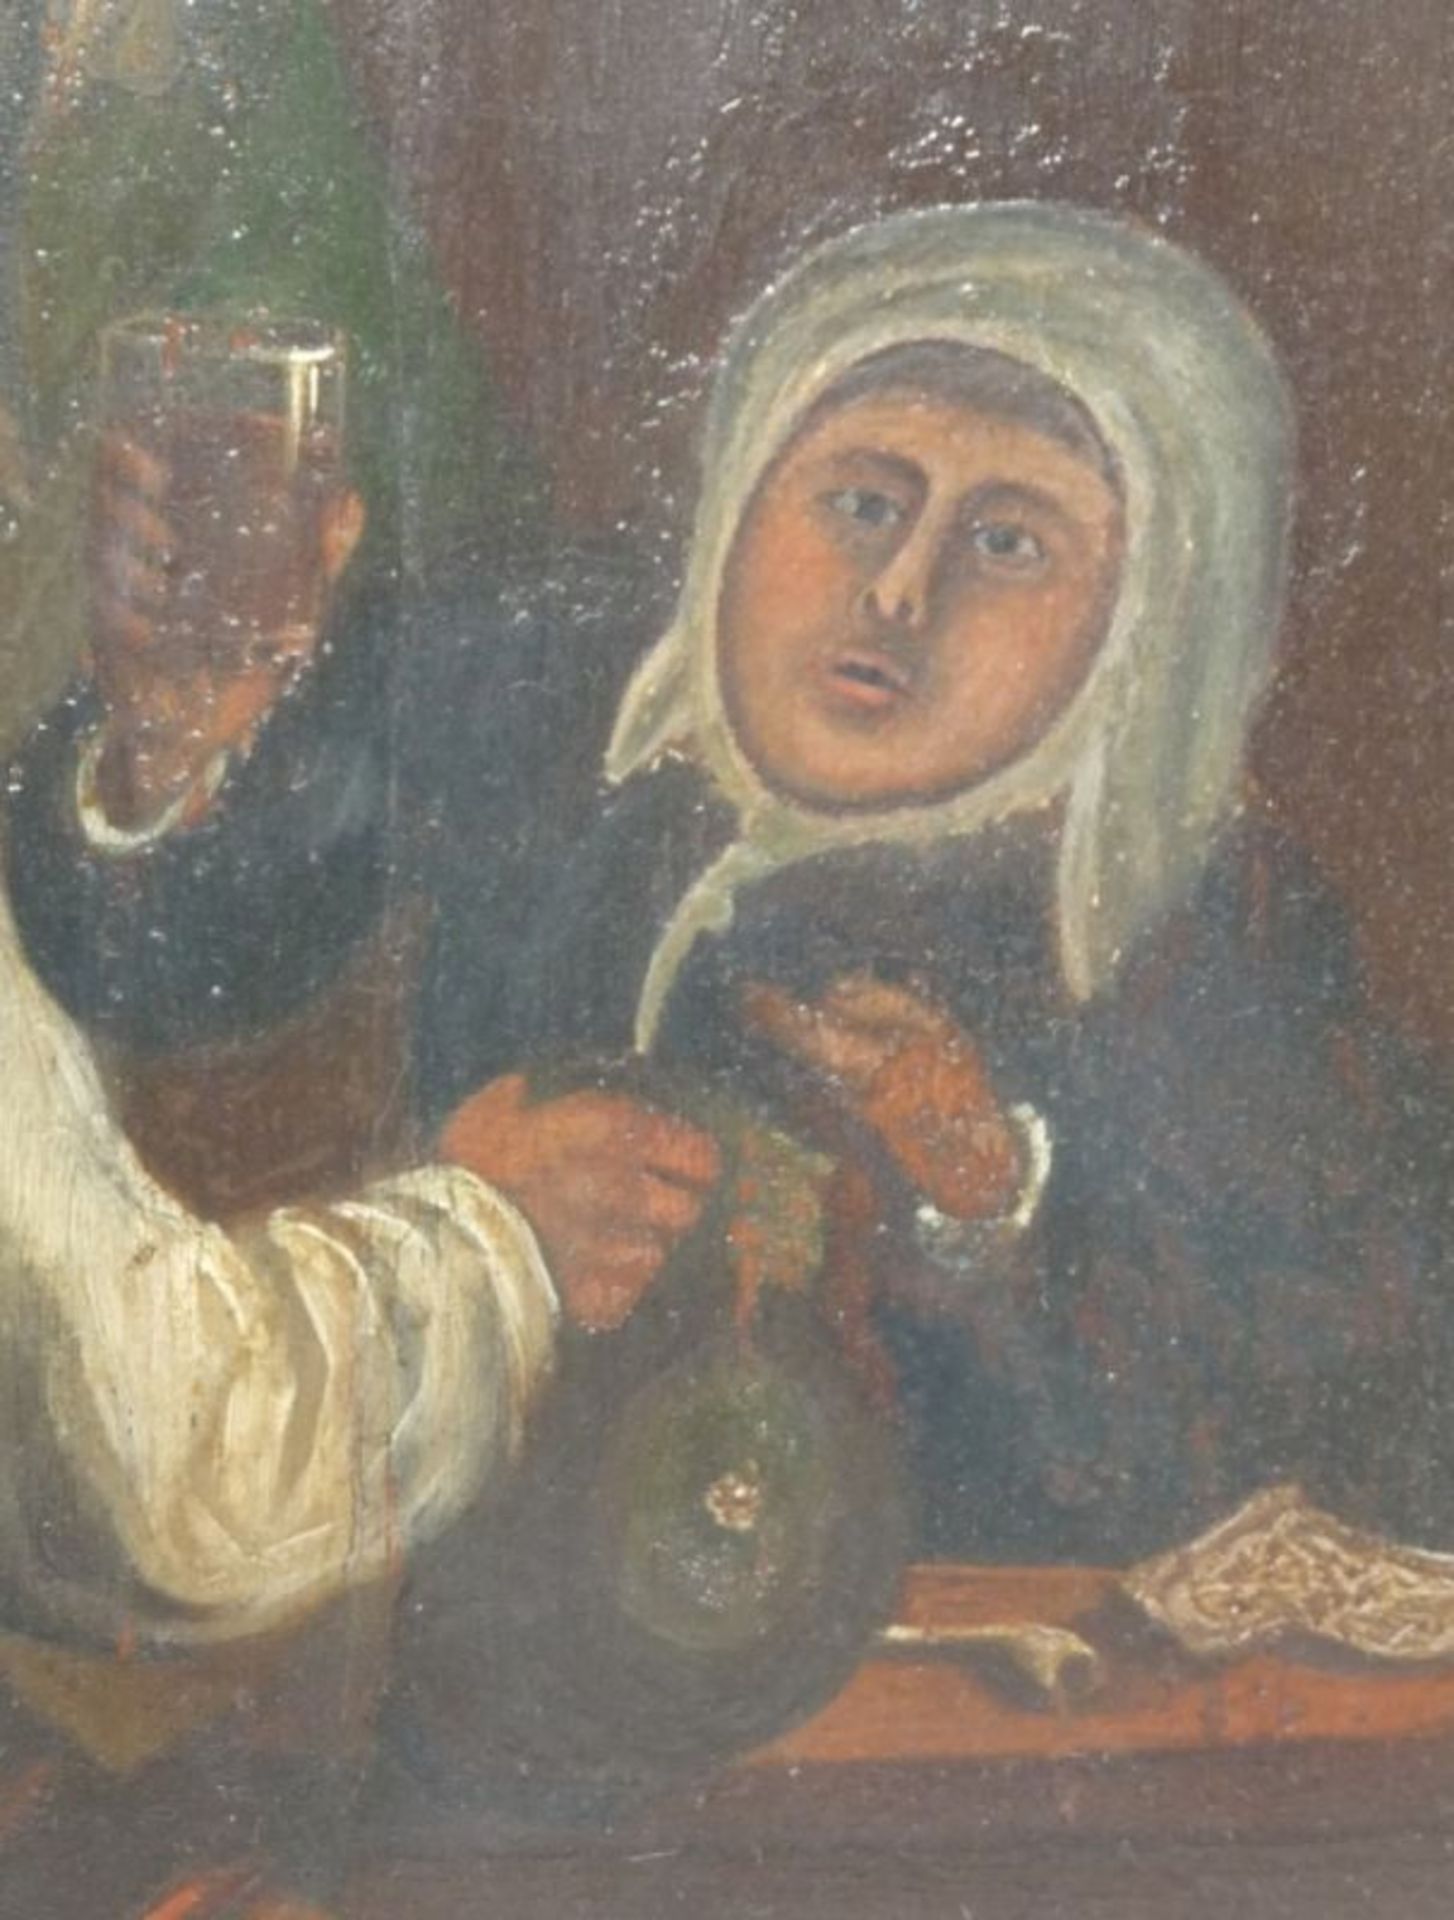 Unbekannter Maler des fr. 18. JahrhundertsDrei Zecher am WirtshaustischUm 1700. Öl/Holz. 25 x 20,3 - Bild 3 aus 4